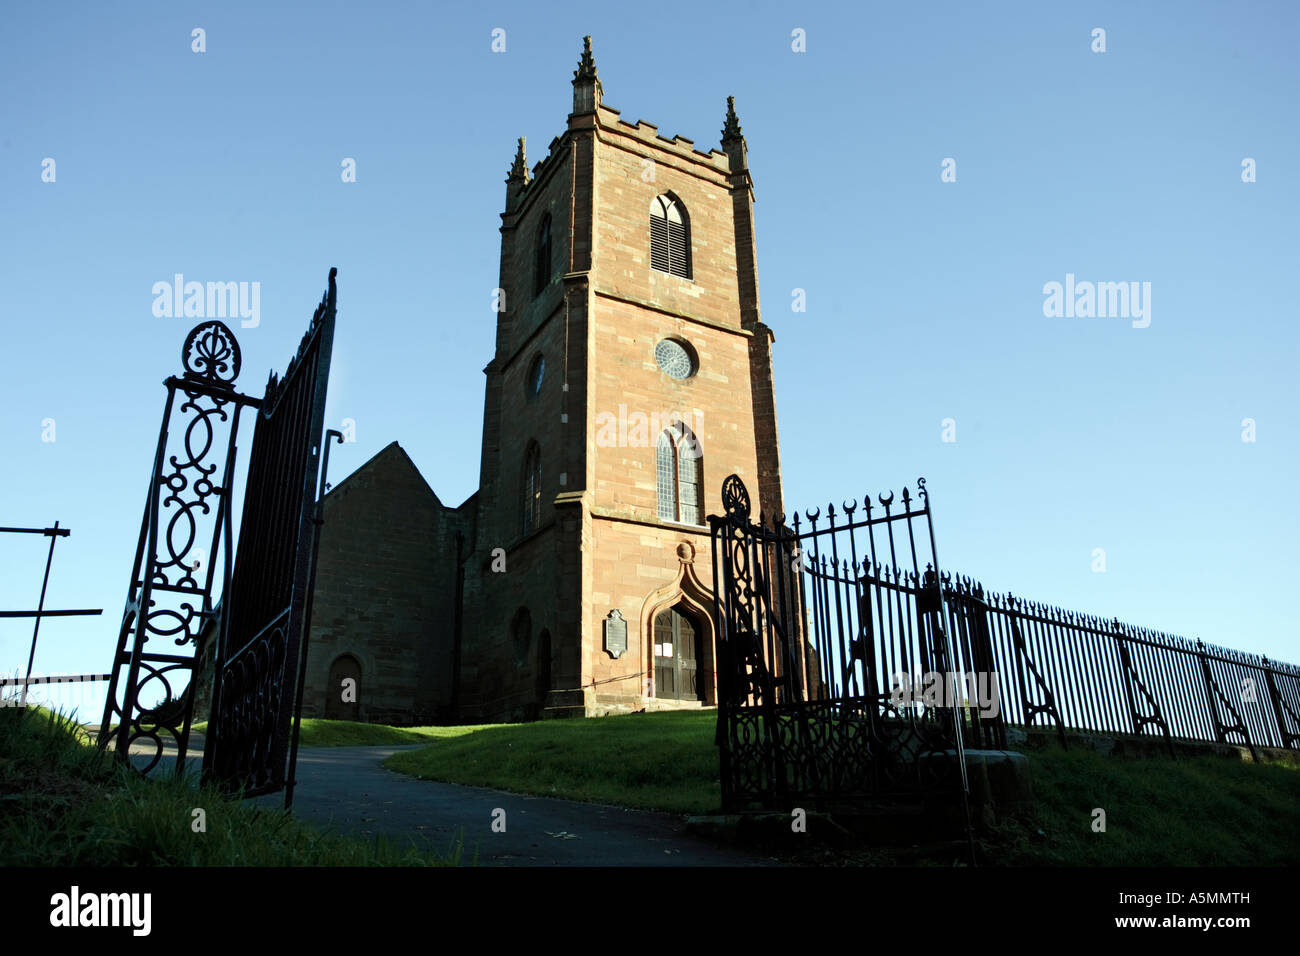 Hanbury chiesa in WORCESTERSHIRE REGNO UNITO scene della BBC radio seriale gli arcieri sono stati registrati qui Foto Stock